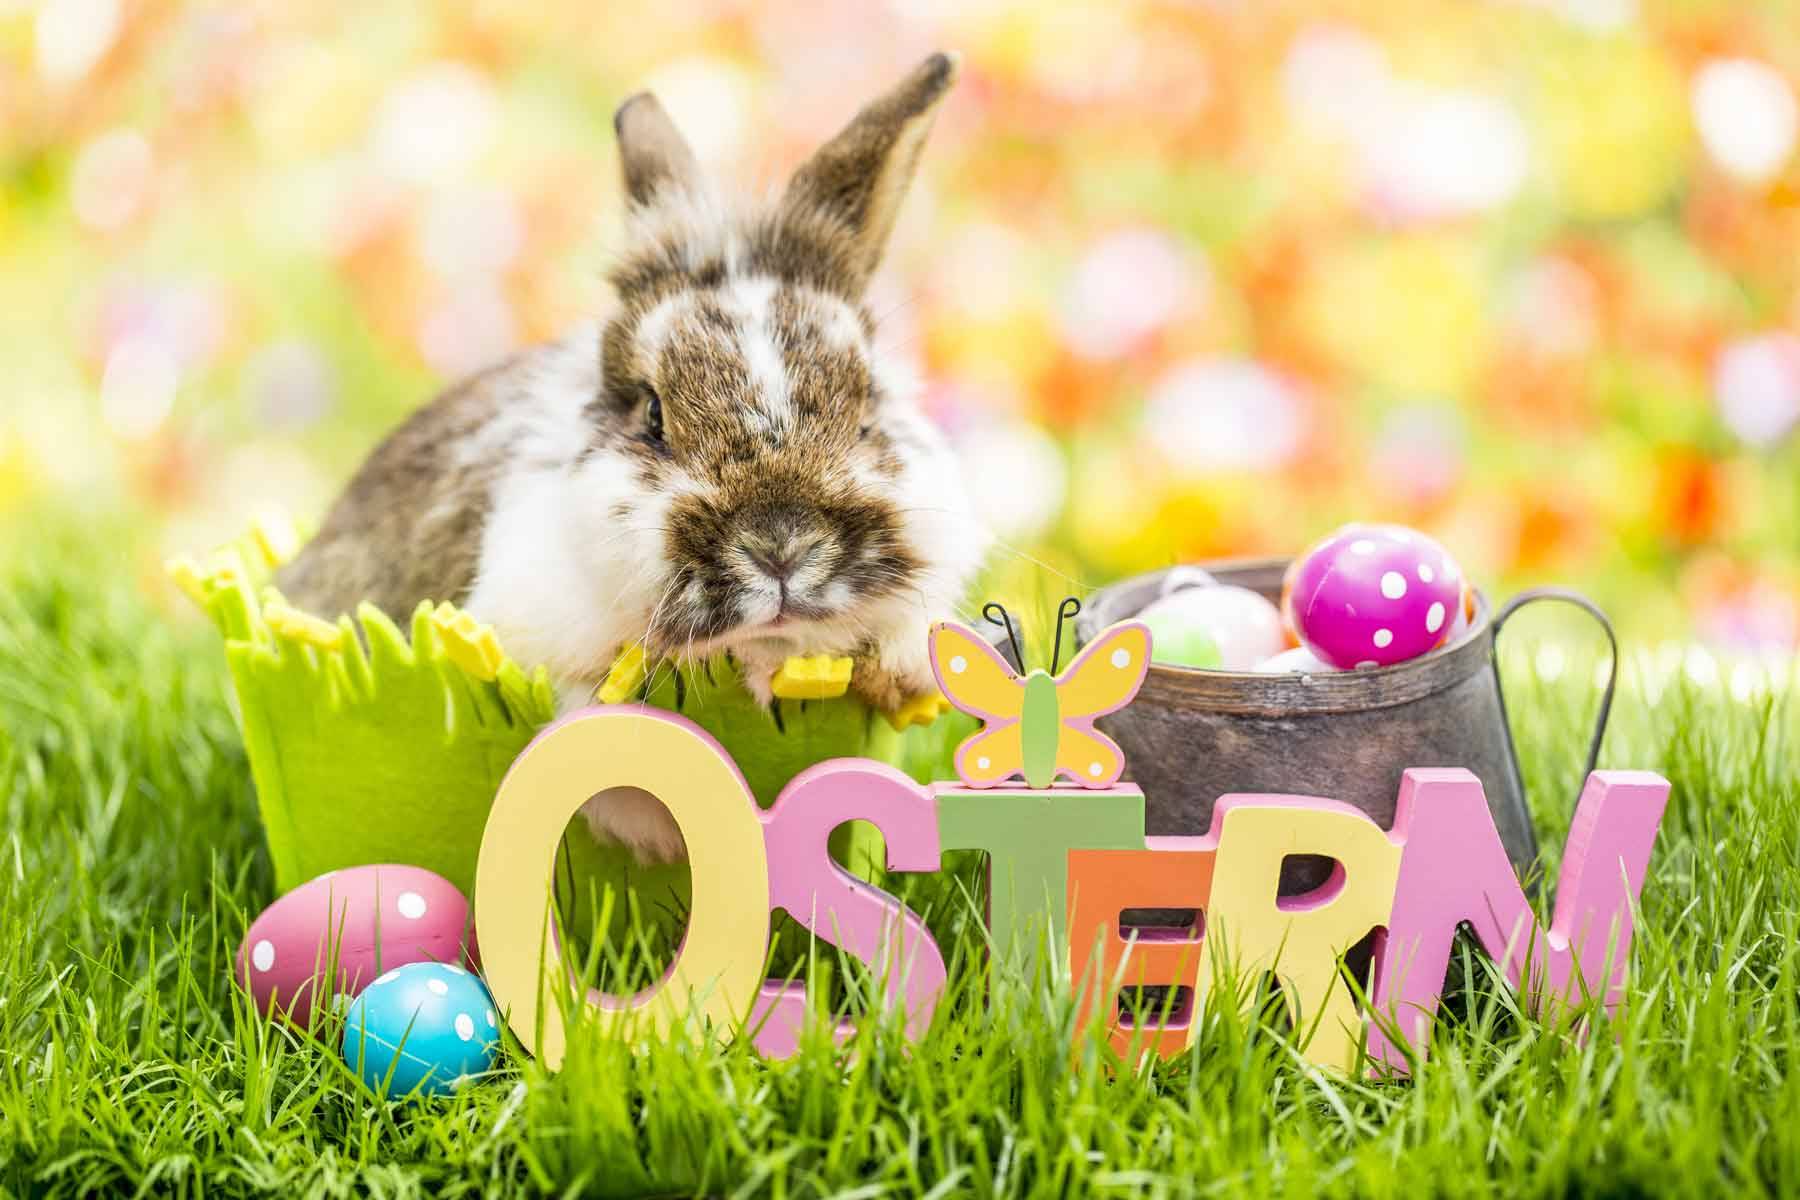 Osterhase: il coniglio di Pasqua della tradizione tedesca